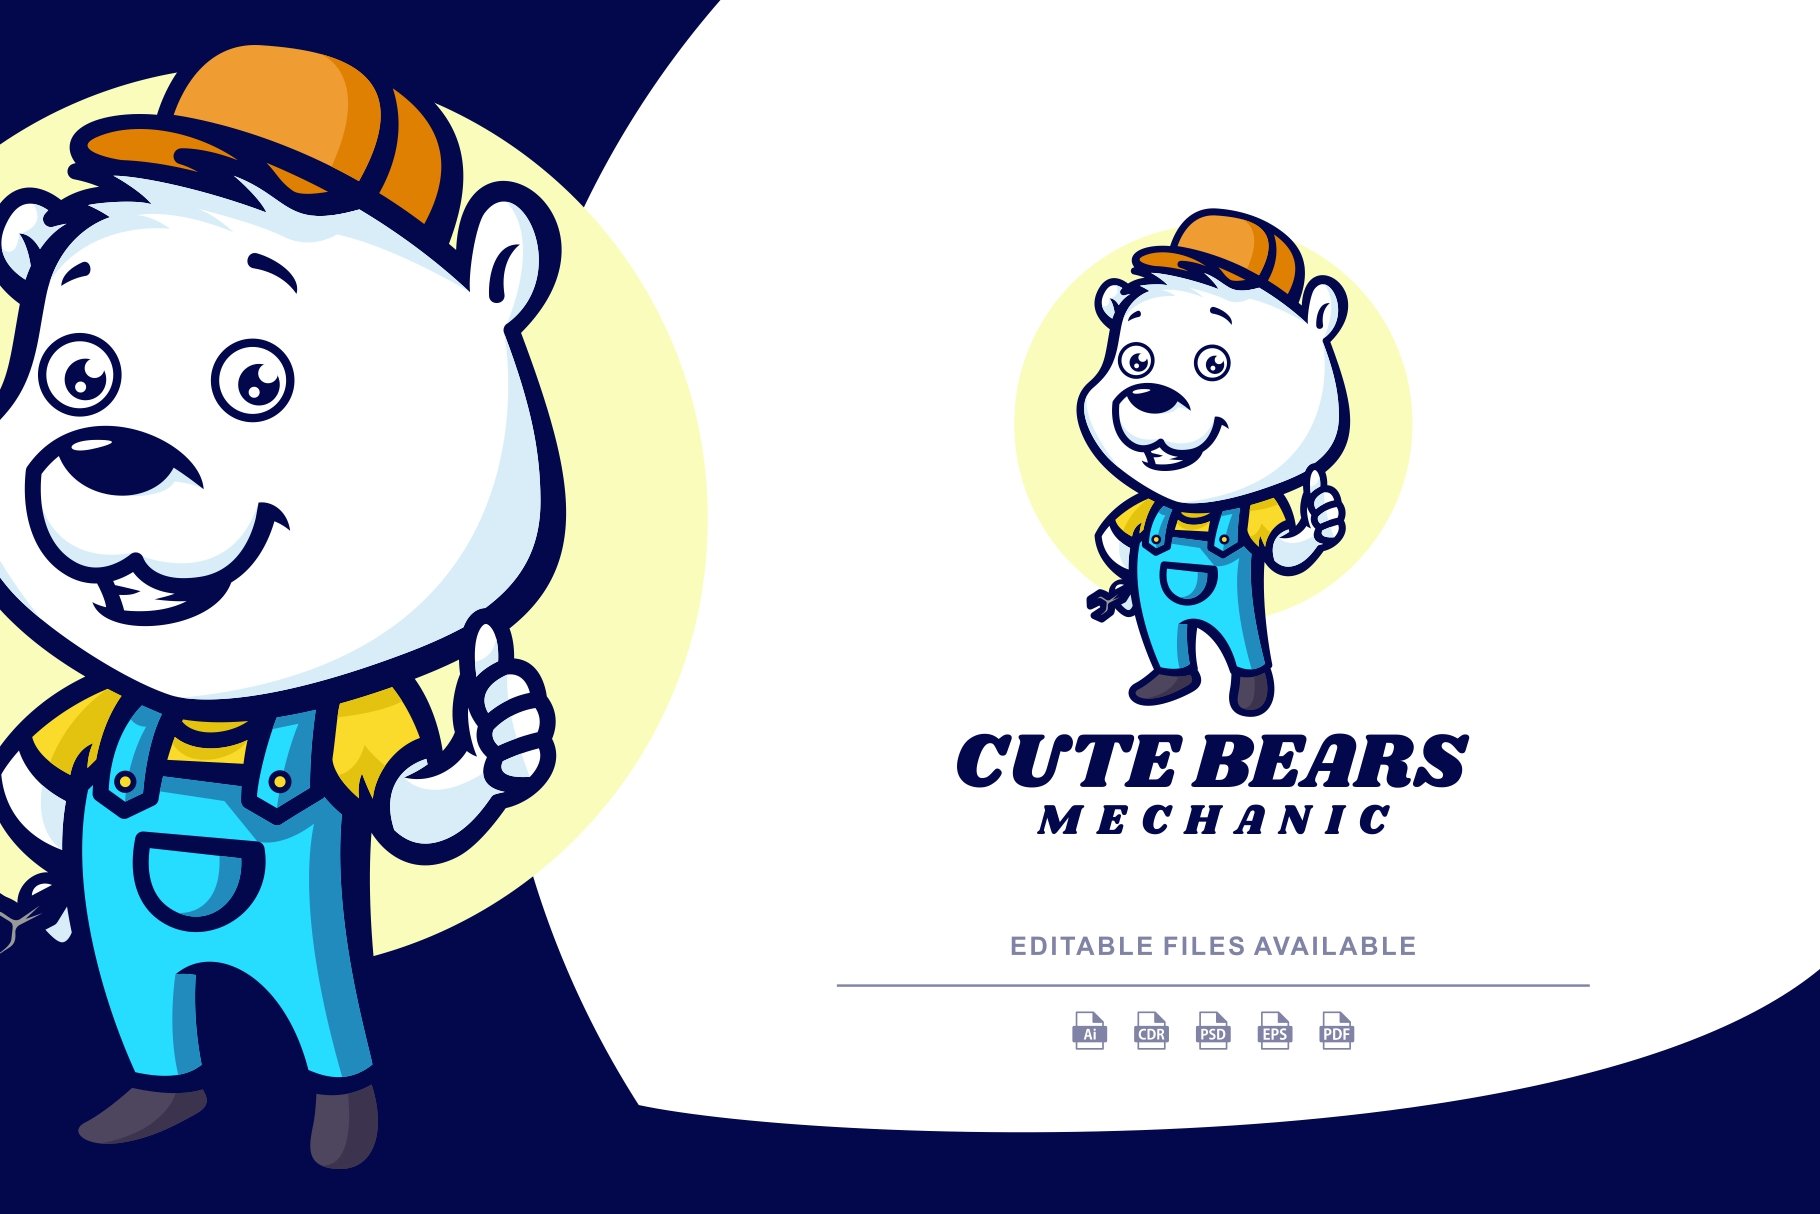 Cute Bear Mascot Cartoon Logo cover image.